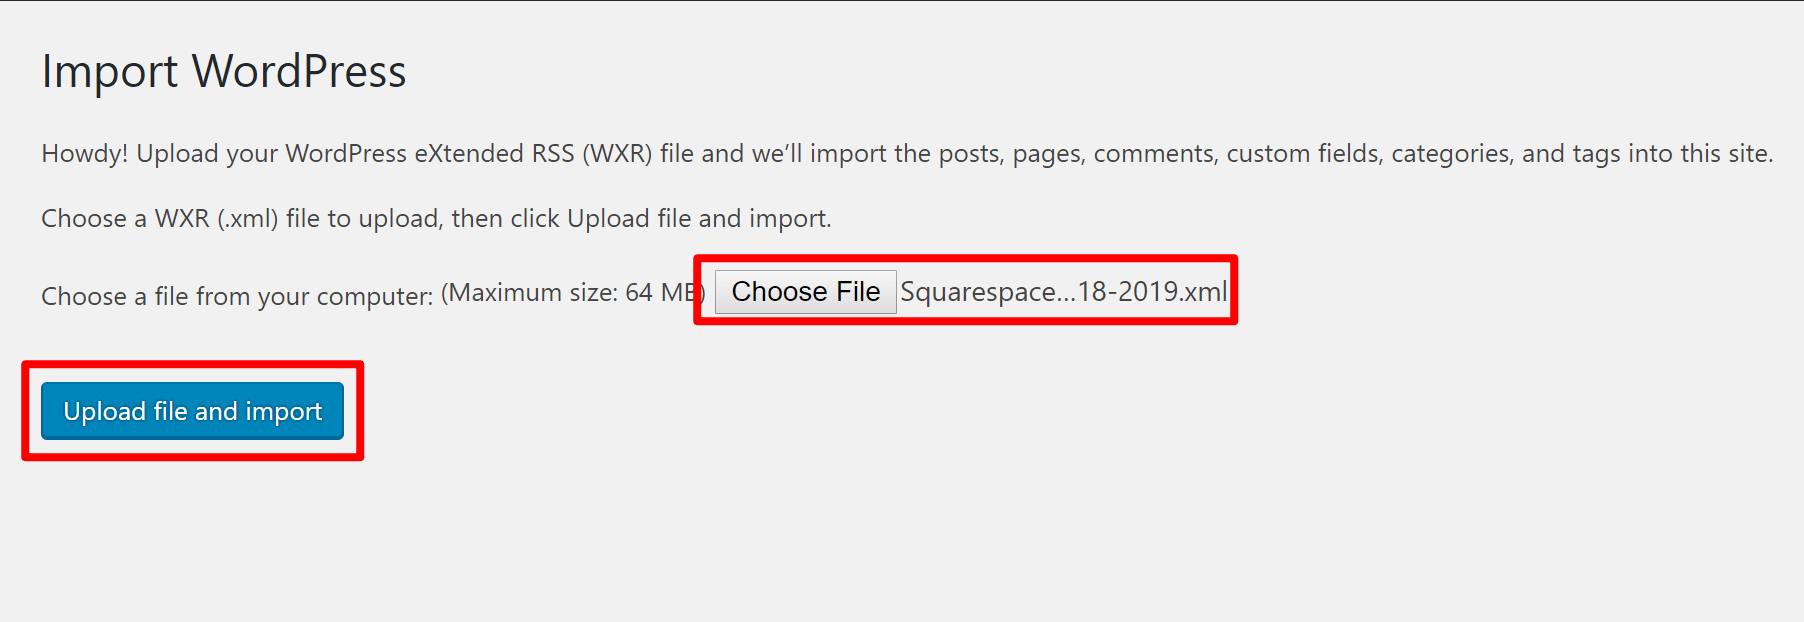 Choisissez le fichier d'exportation Squarespace pour WordPress